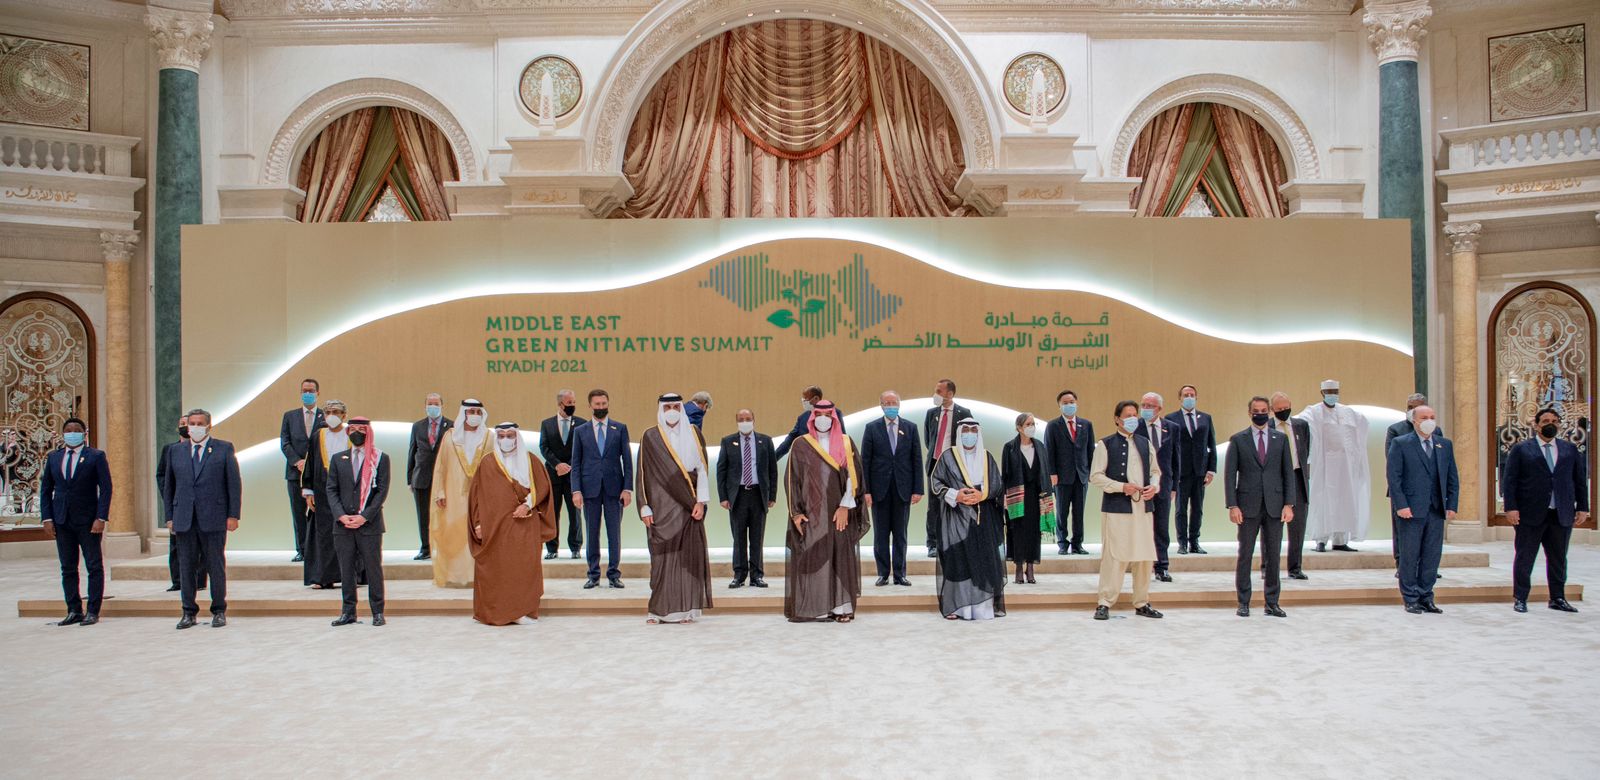 بيان رئاسي عن مبادرة الشرق الأوسط الأخضر: تشكيل فرق عمل مشتركة وعقد القمة بشكل دوري